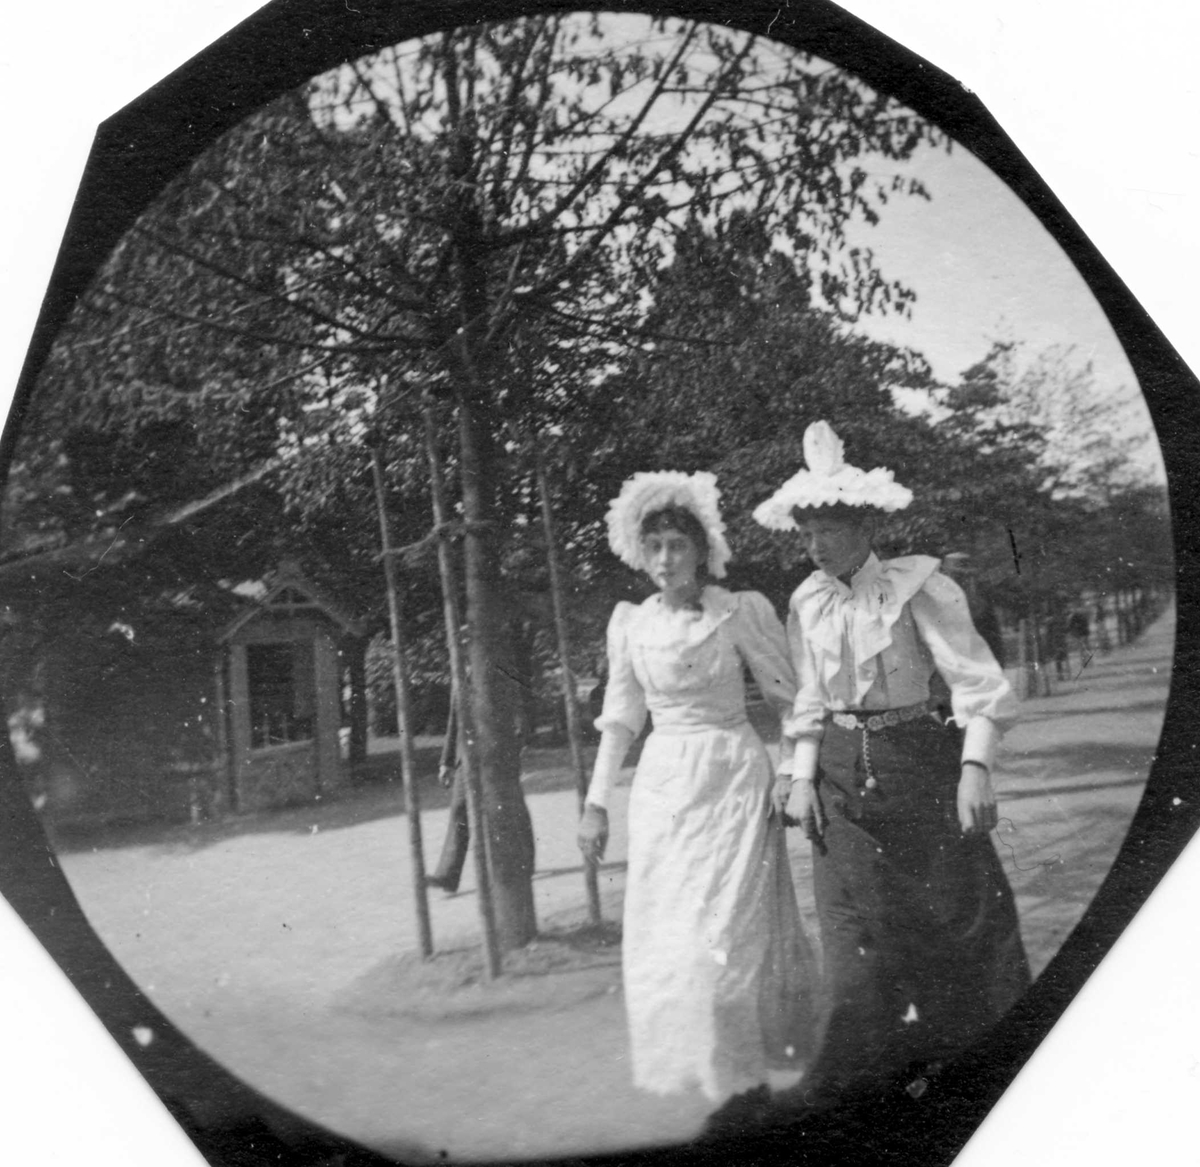 Frk. Holt og frk. Nielsen ("Molle" og "Polle") med hvite hatter spaserer ant. i Studenterlunden, Karl Johans gate, Oslo.